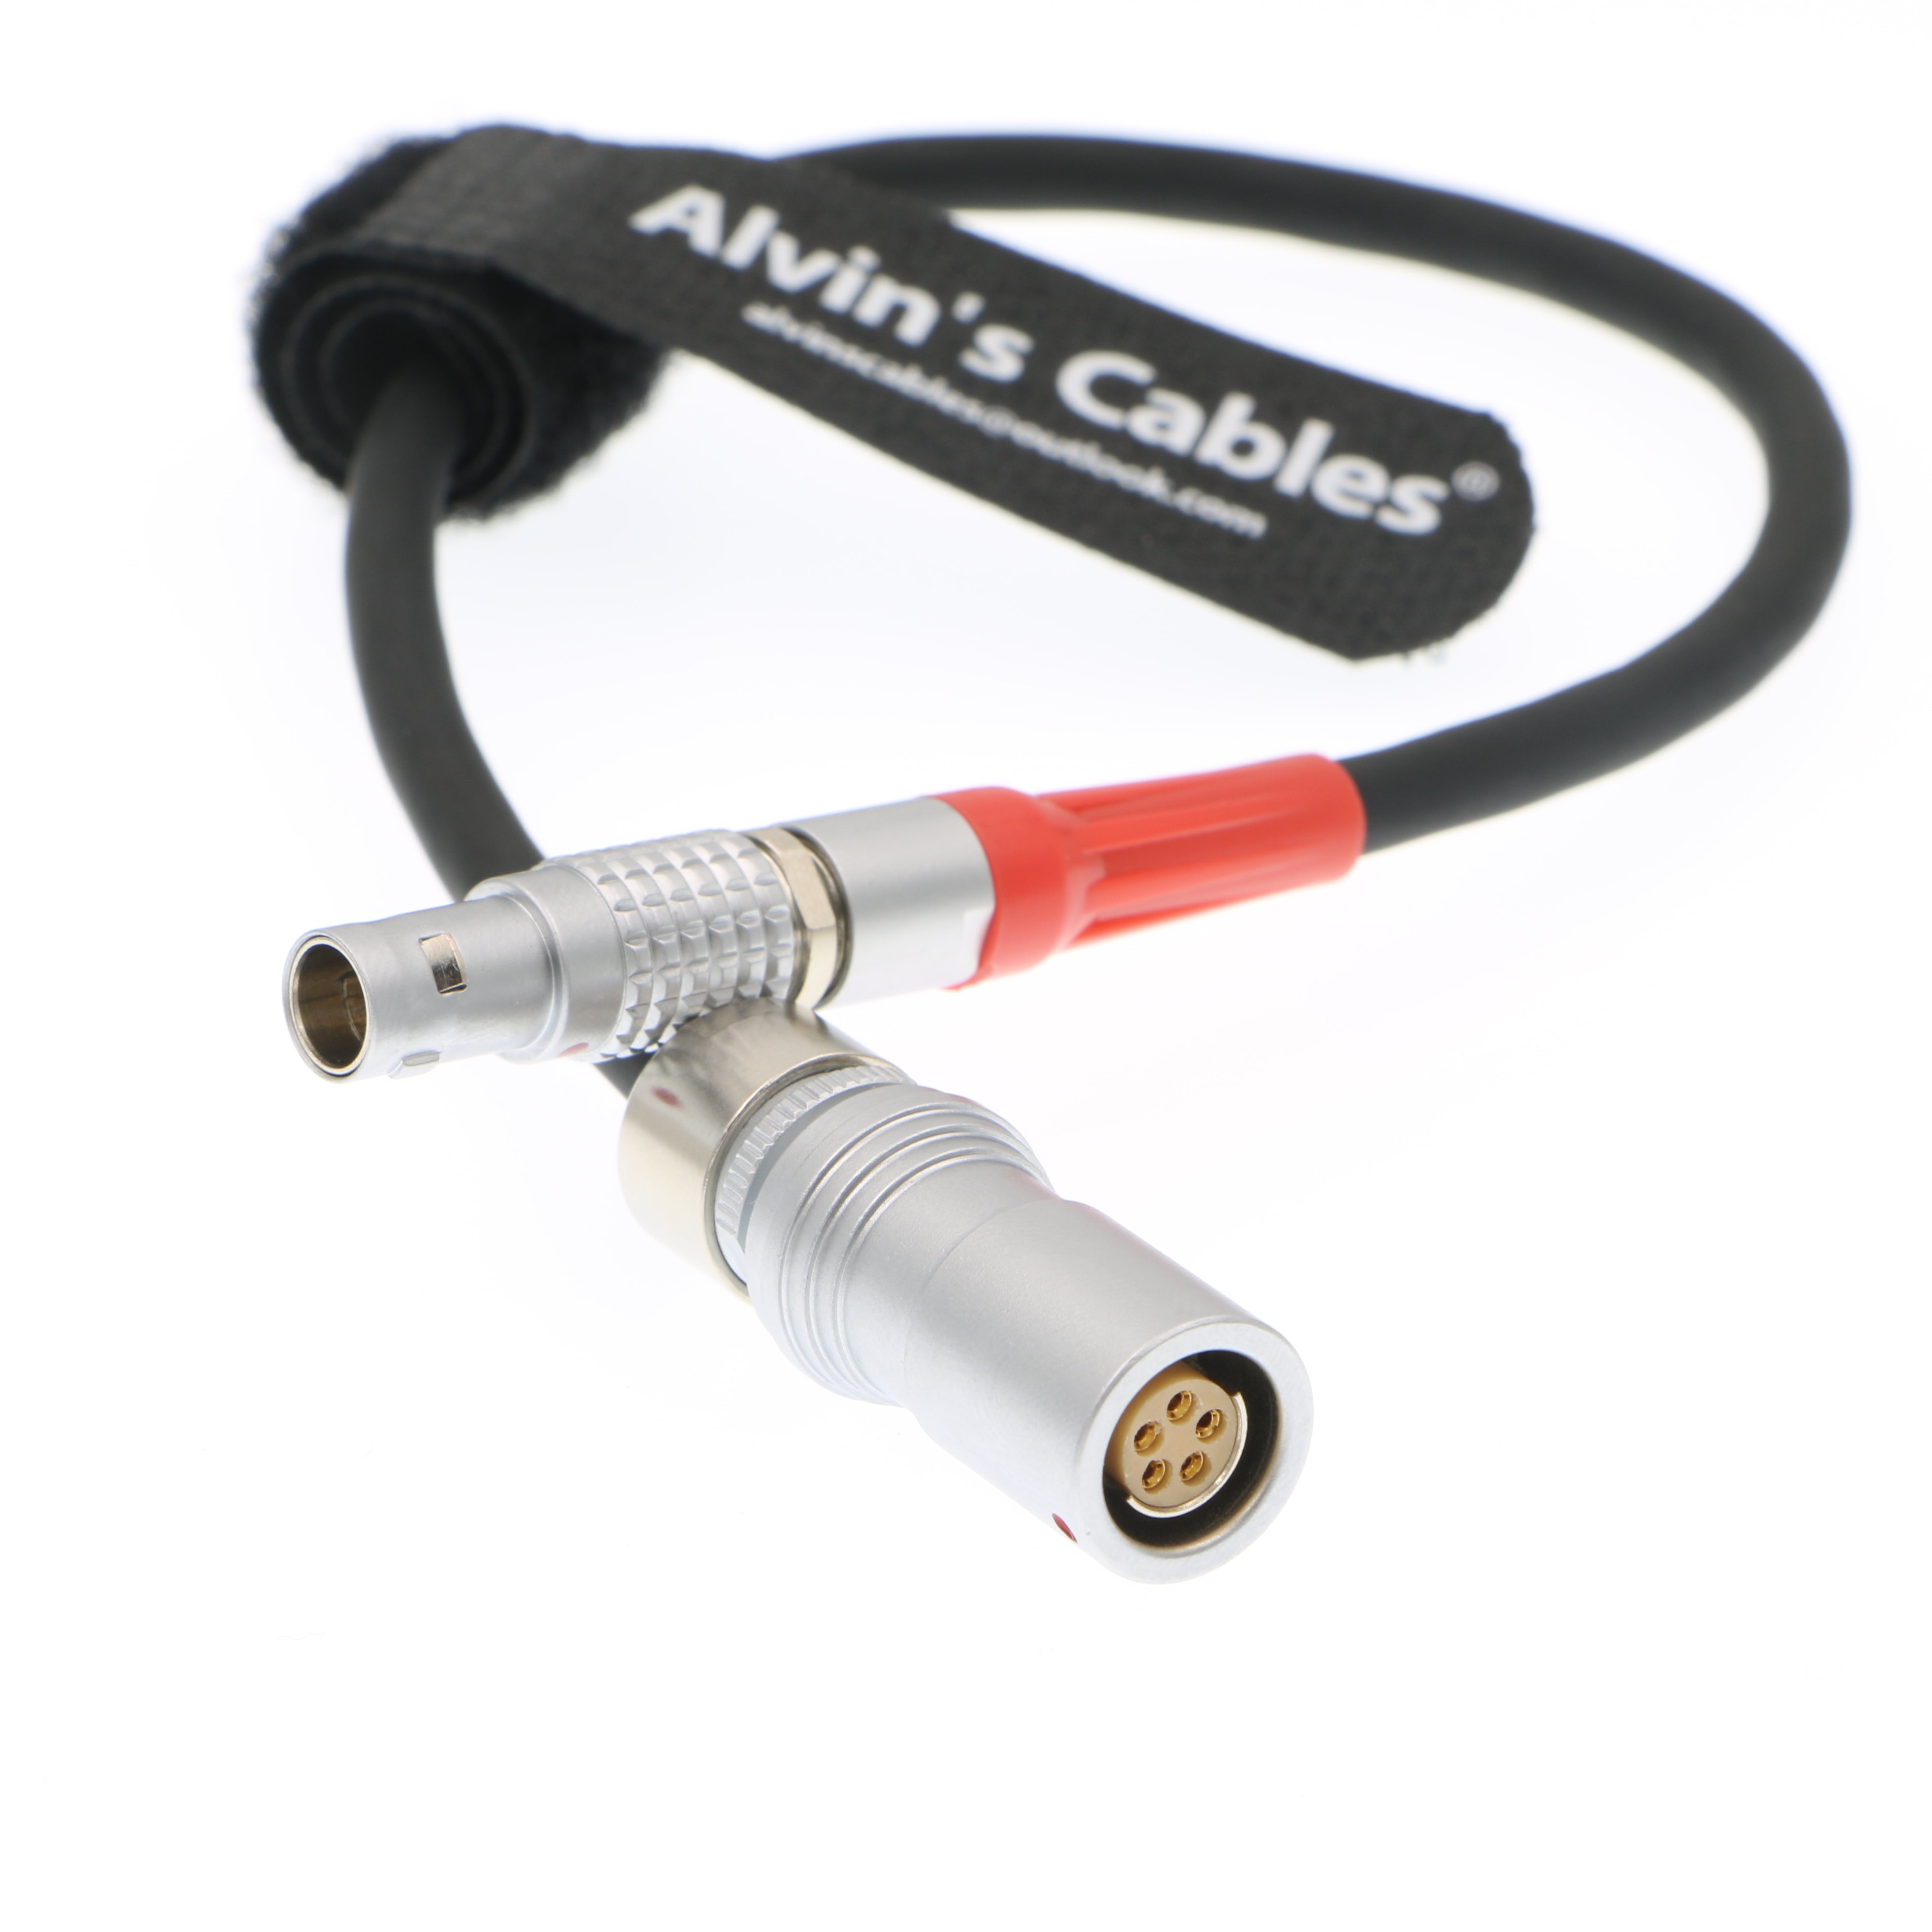 Alvin's Cables 4-poliger Cmotion-LBUS-Stecker auf 5-polige LCS-Buchsenkabel für das Arri-Objektivsteuerungssystem